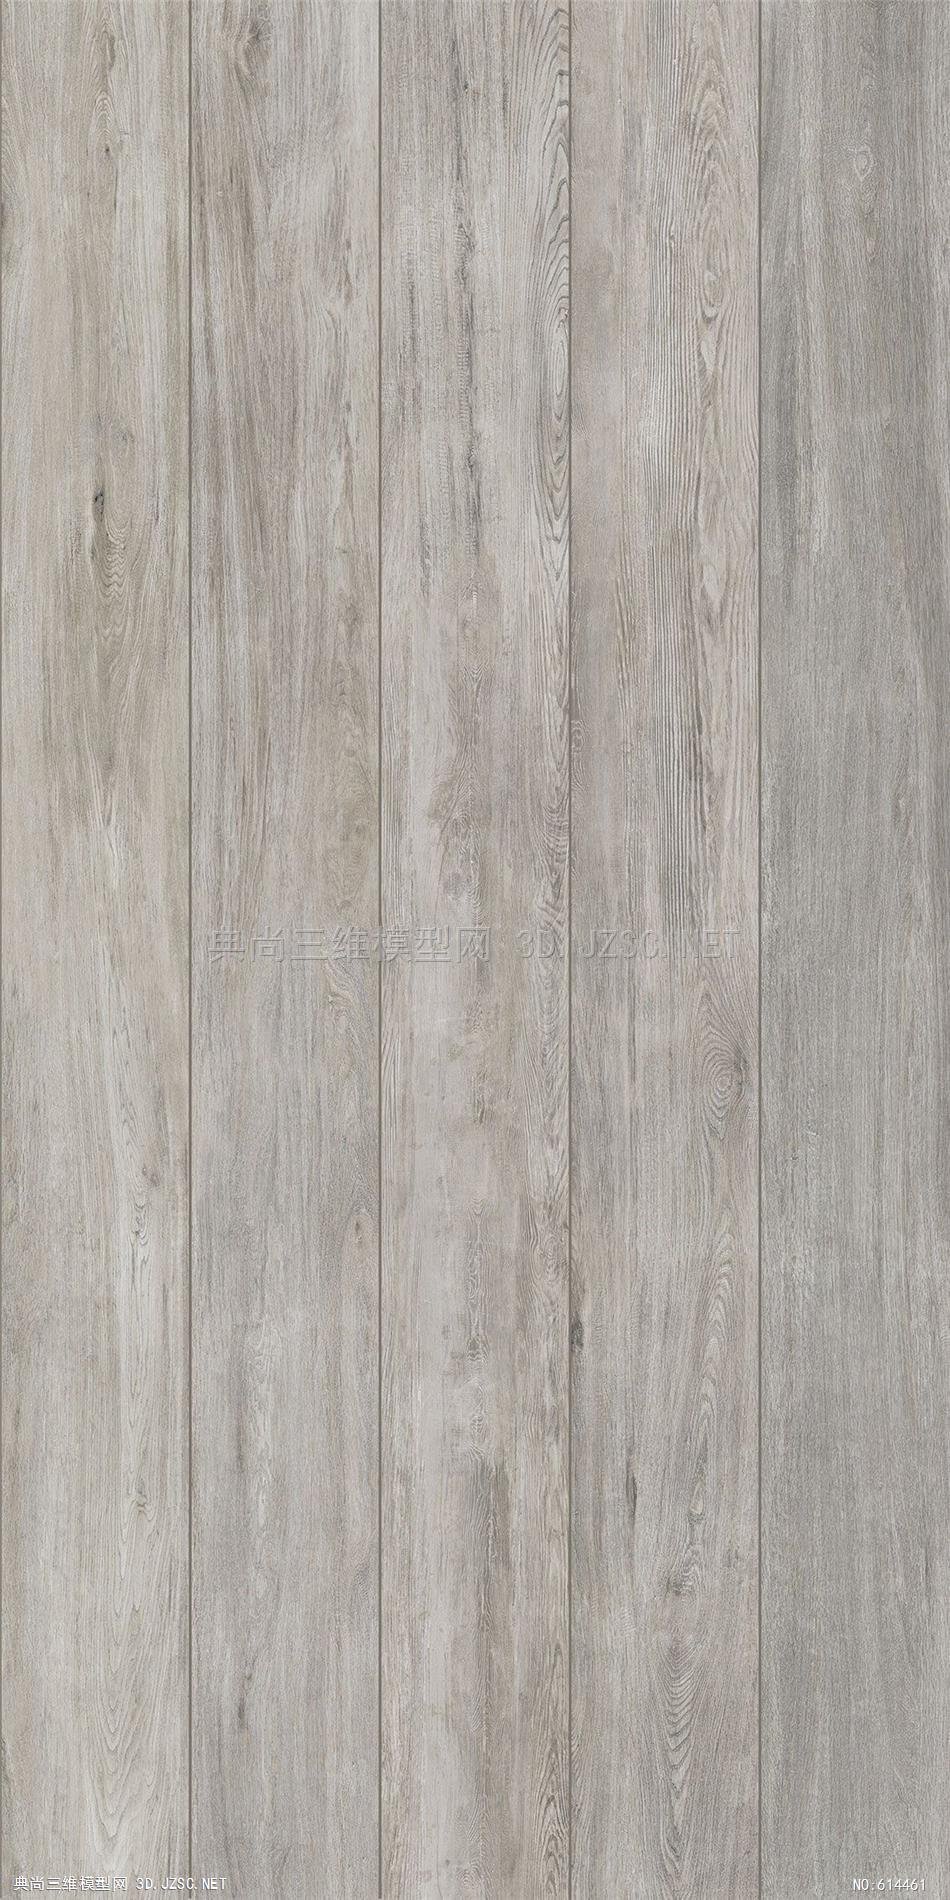 木地板 木纹 木材  高清材质贴图 (138)